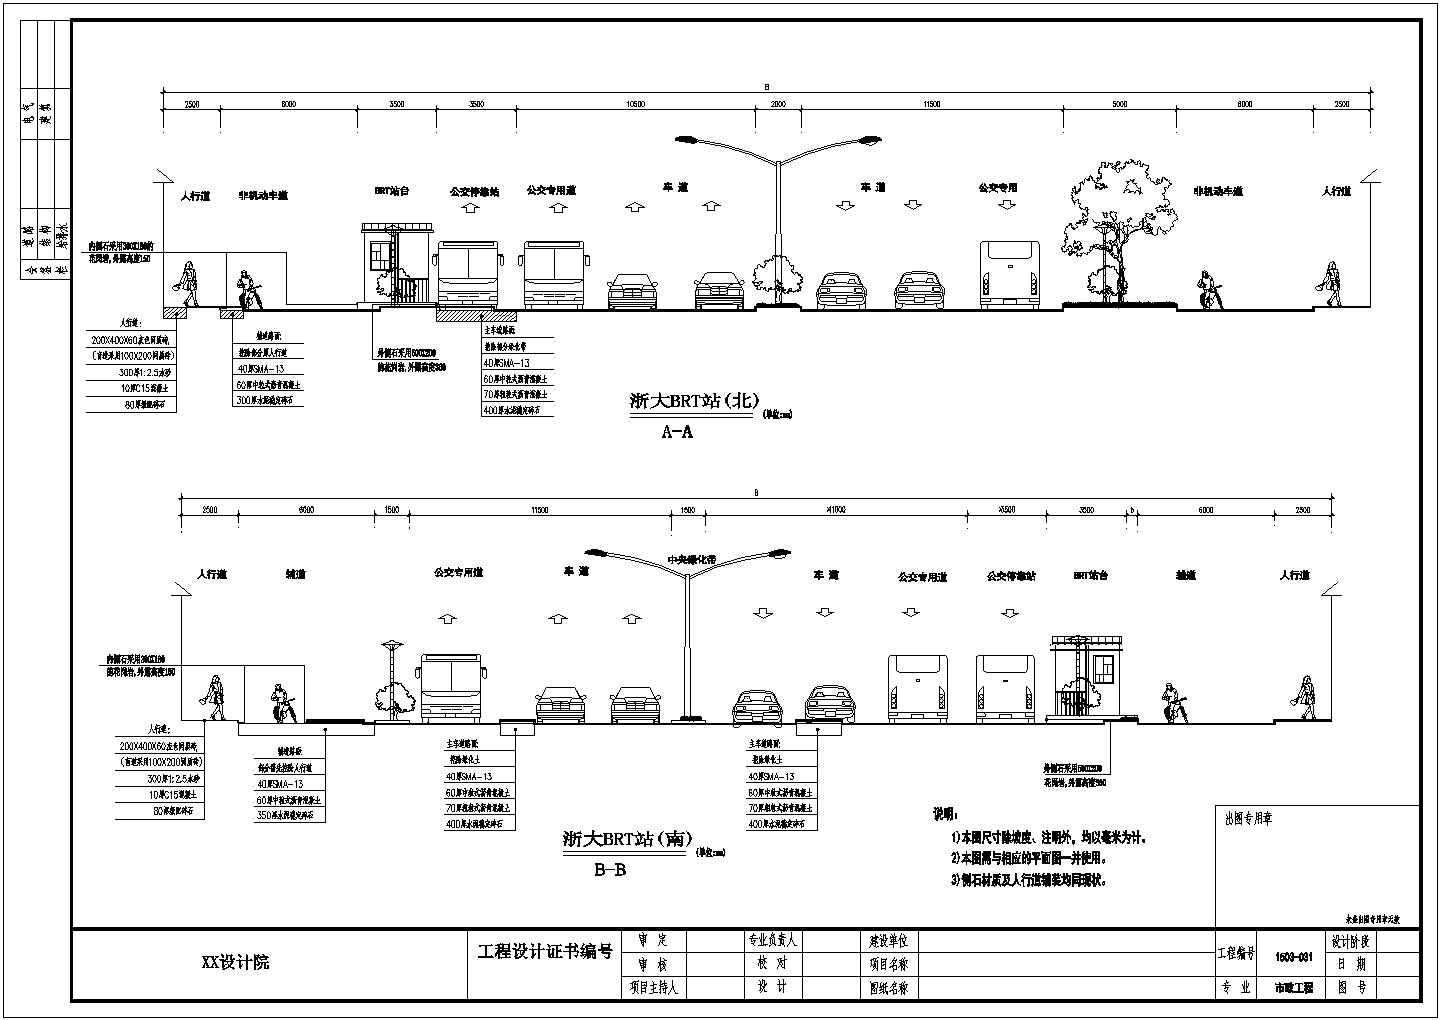 杭州快速公交BRT路面结构及断面设计图